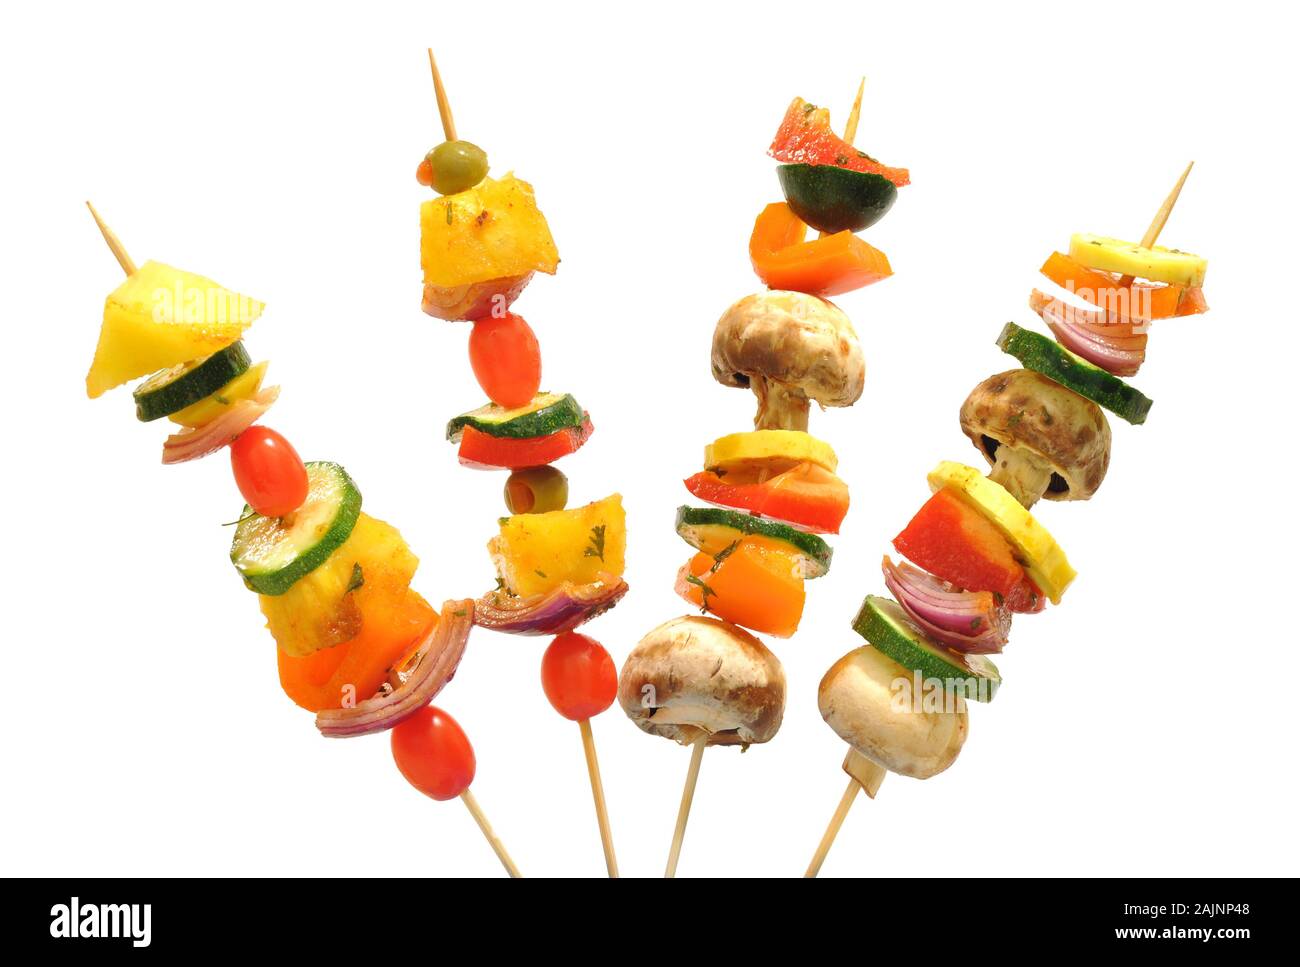 Modo divertente per mangiare verdure sane, kebab con spiedini di bambù Foto Stock